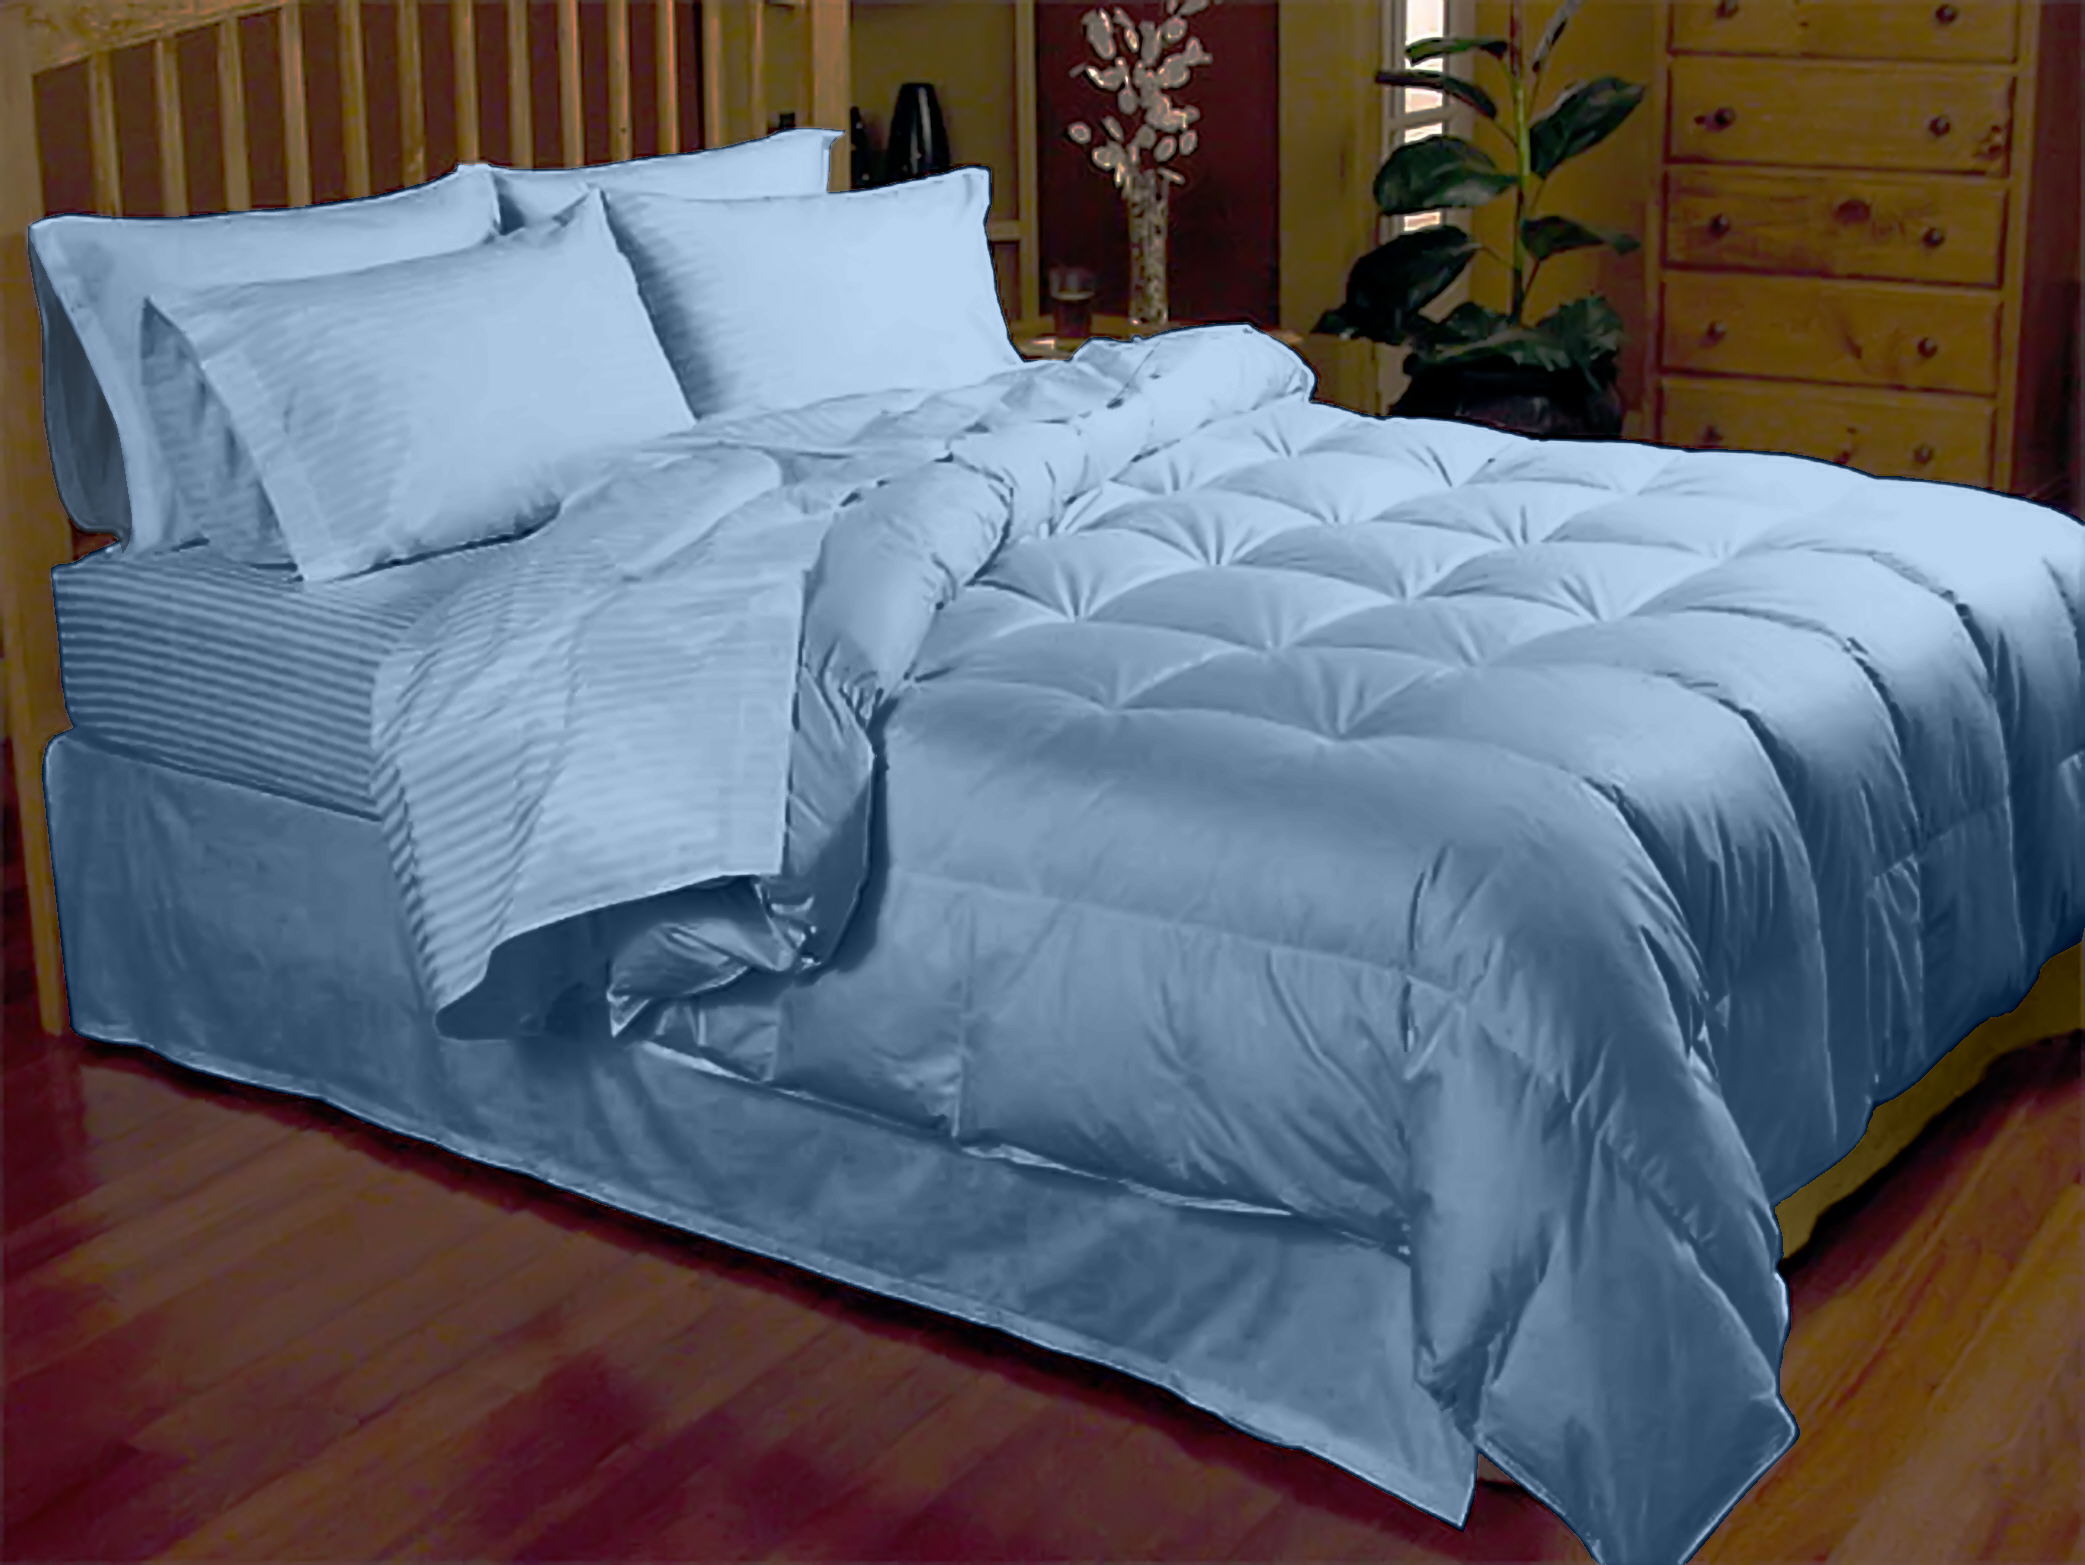 ES 001 A Bed sets._a.jpg